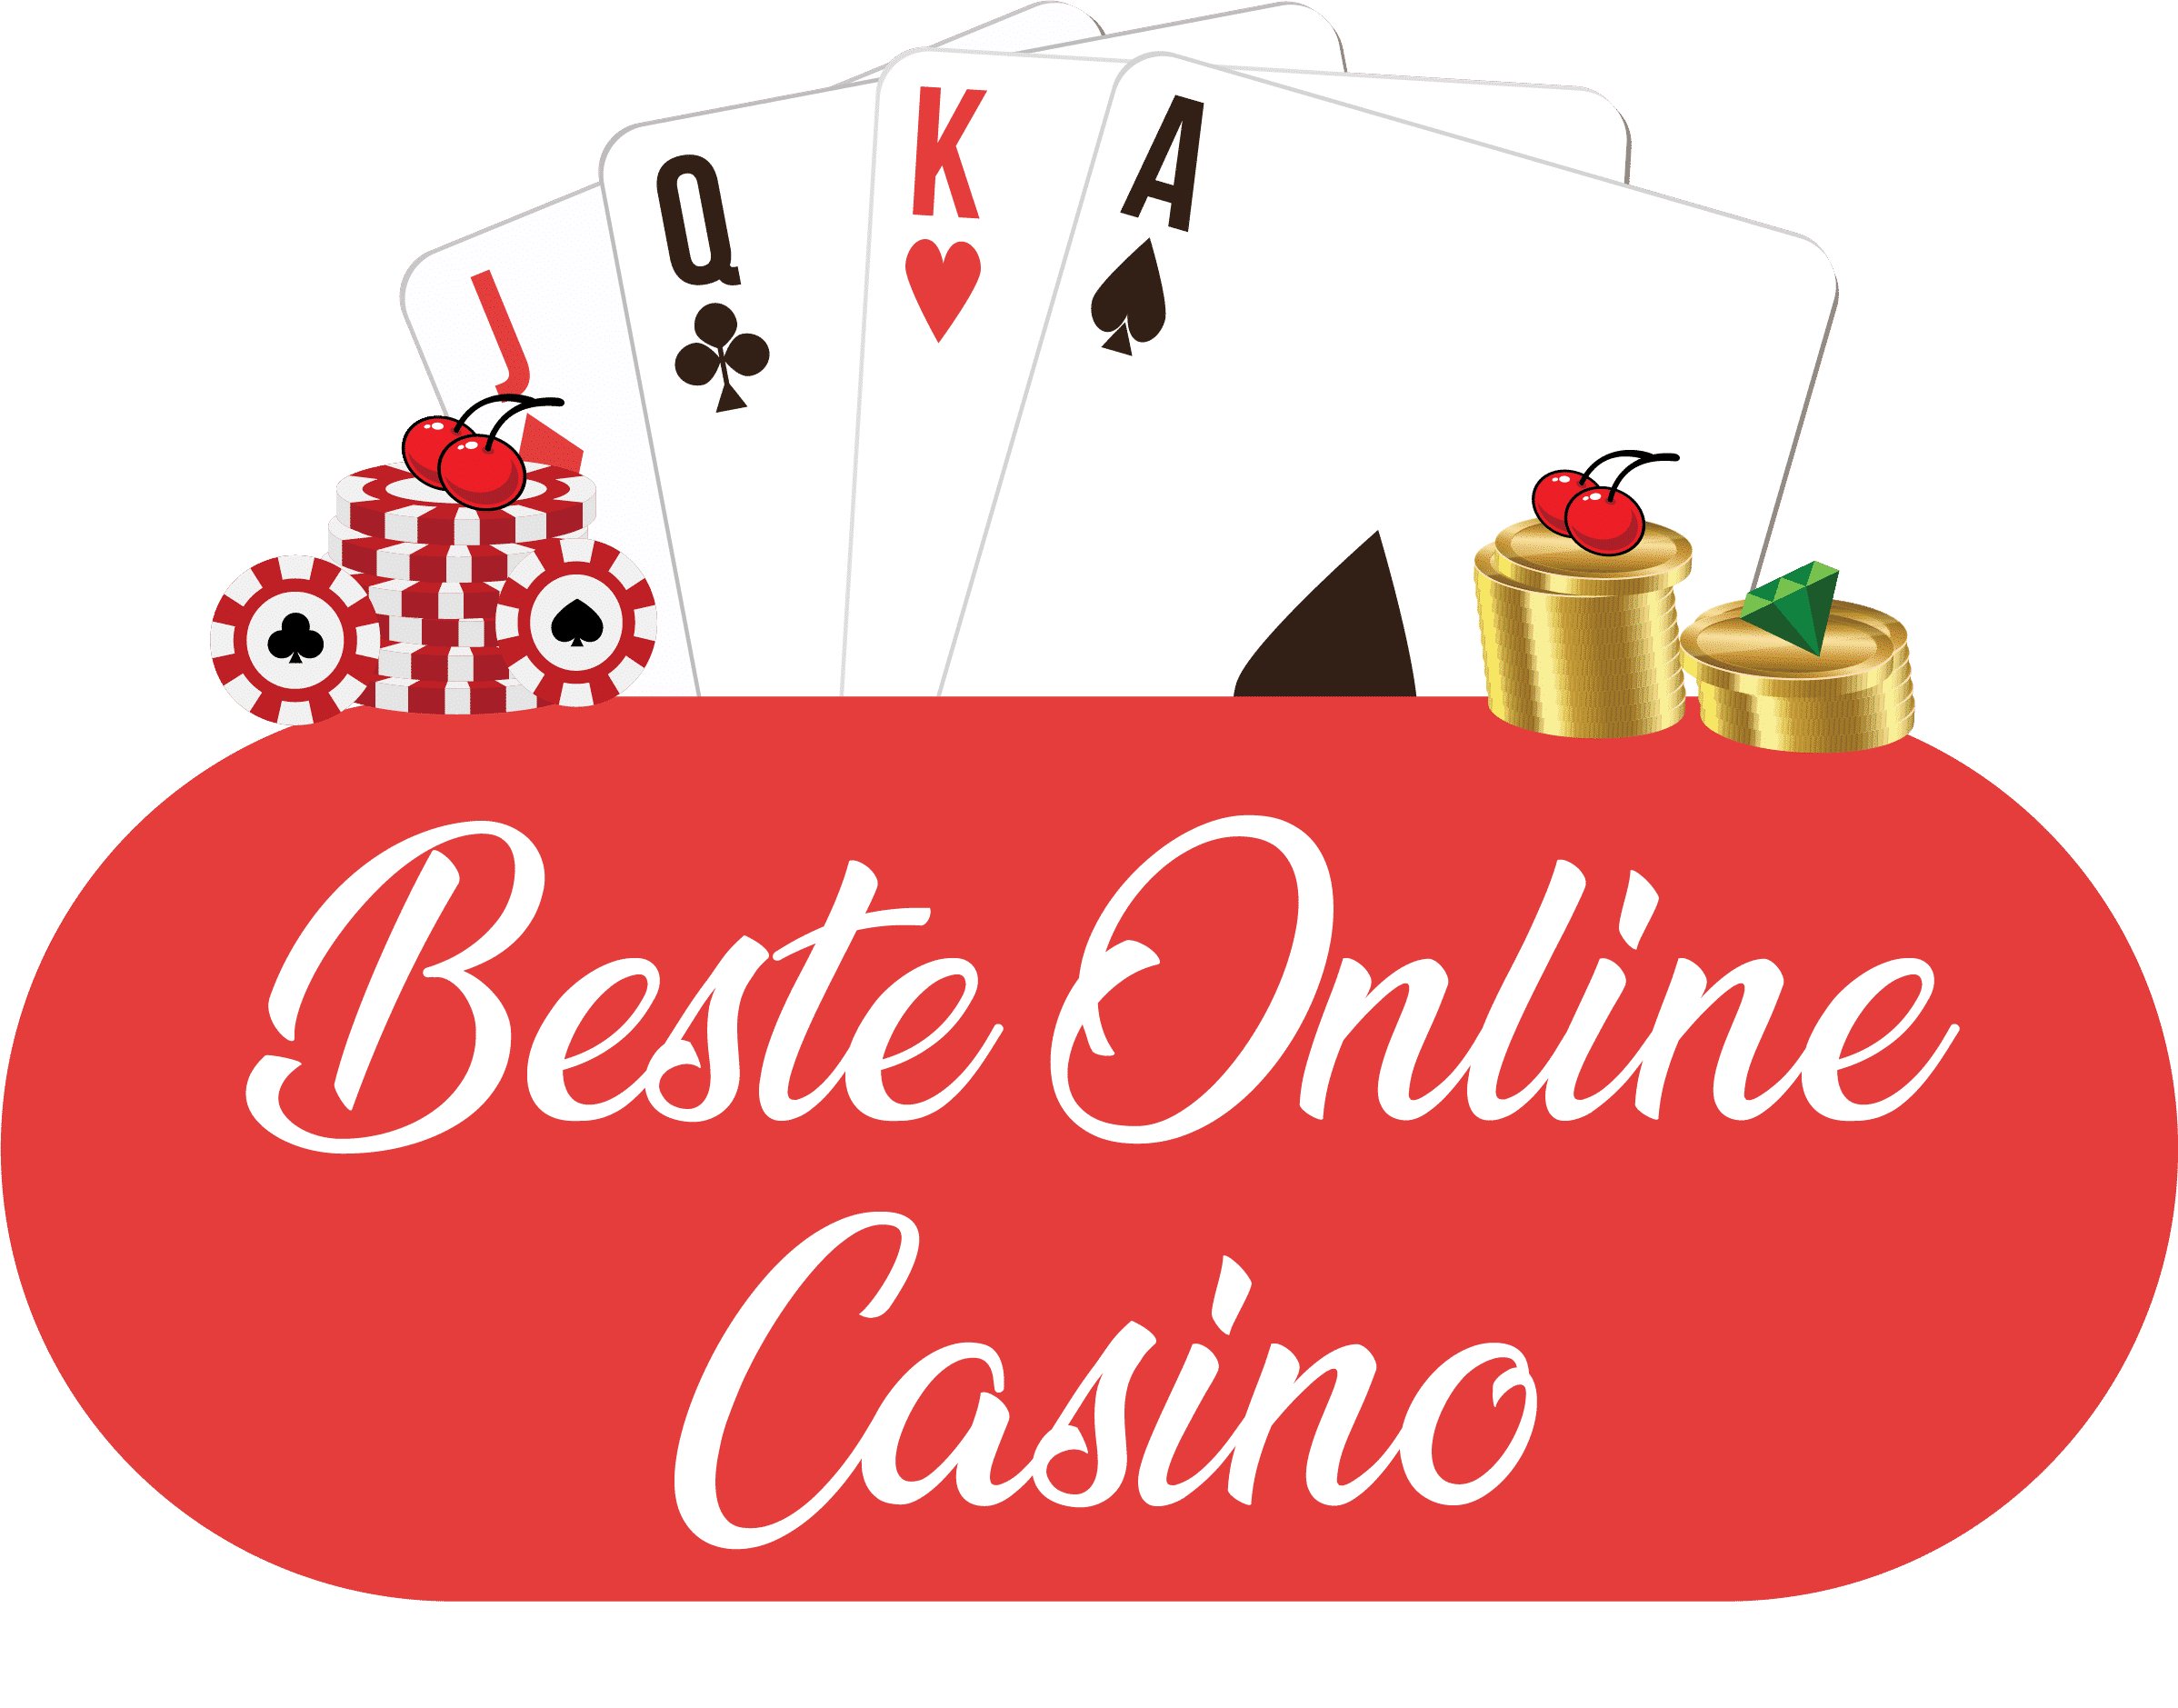 Das beste online casino rezension, das Sie 2021 lesen werden